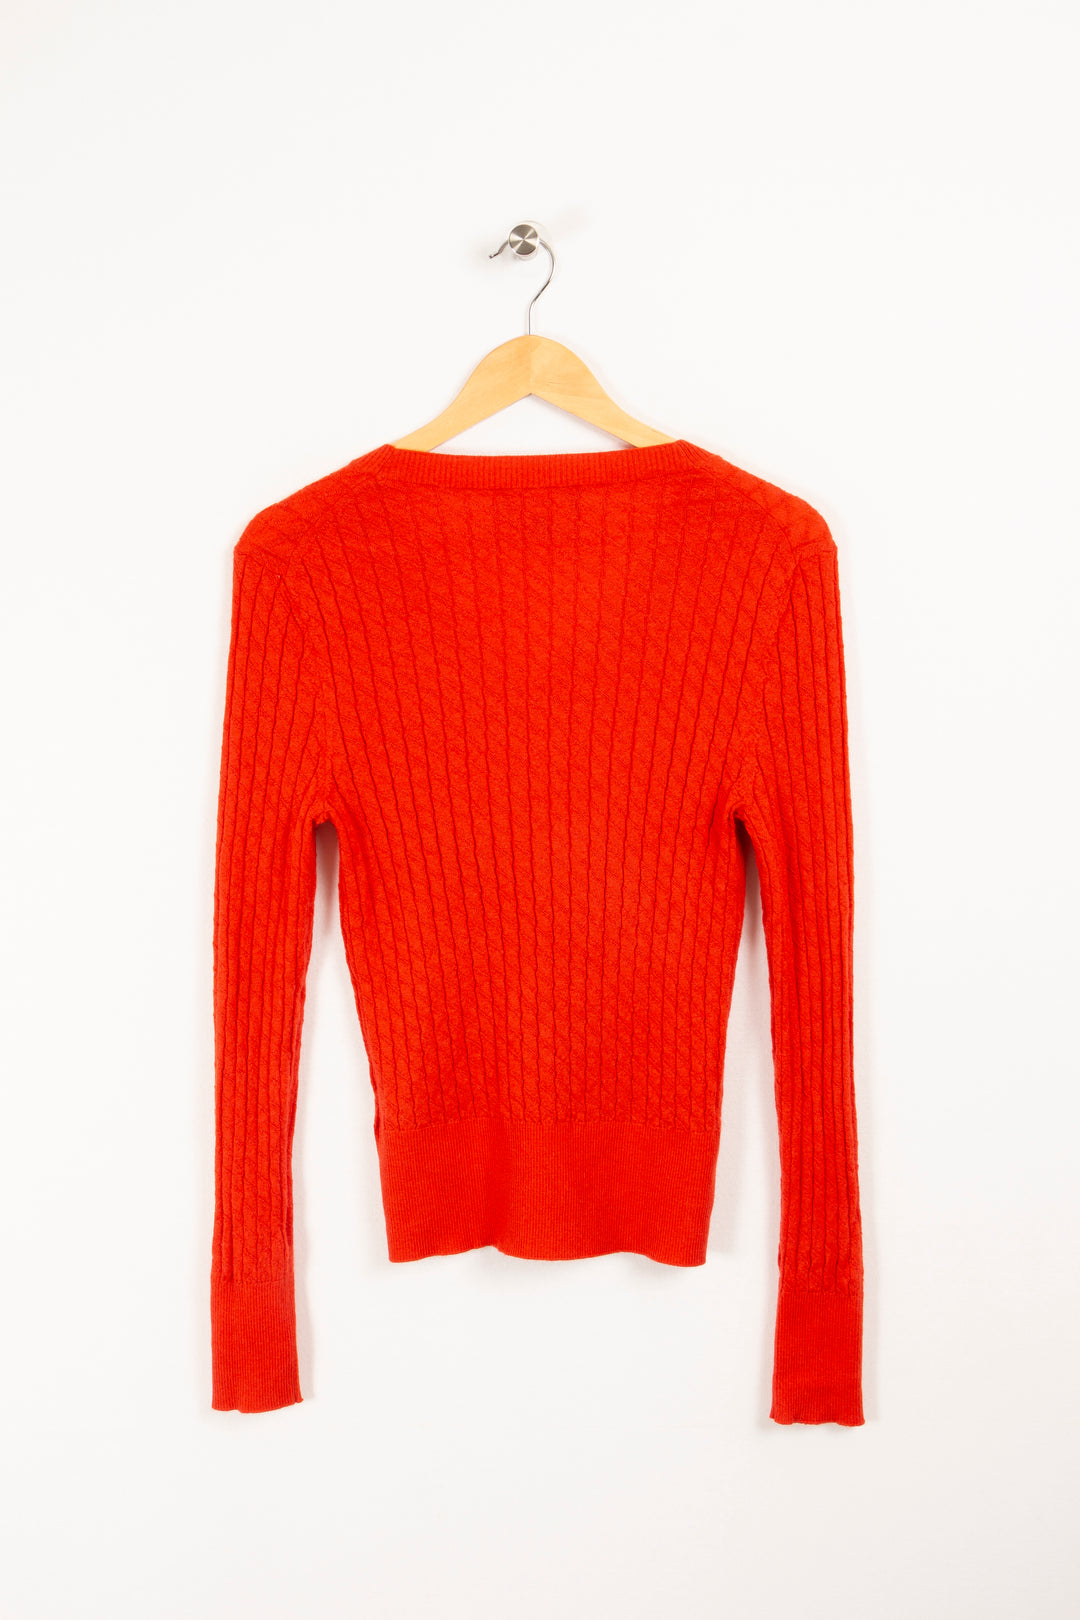 Pullover mit orangefarbenem Streifenmuster – XL / 42